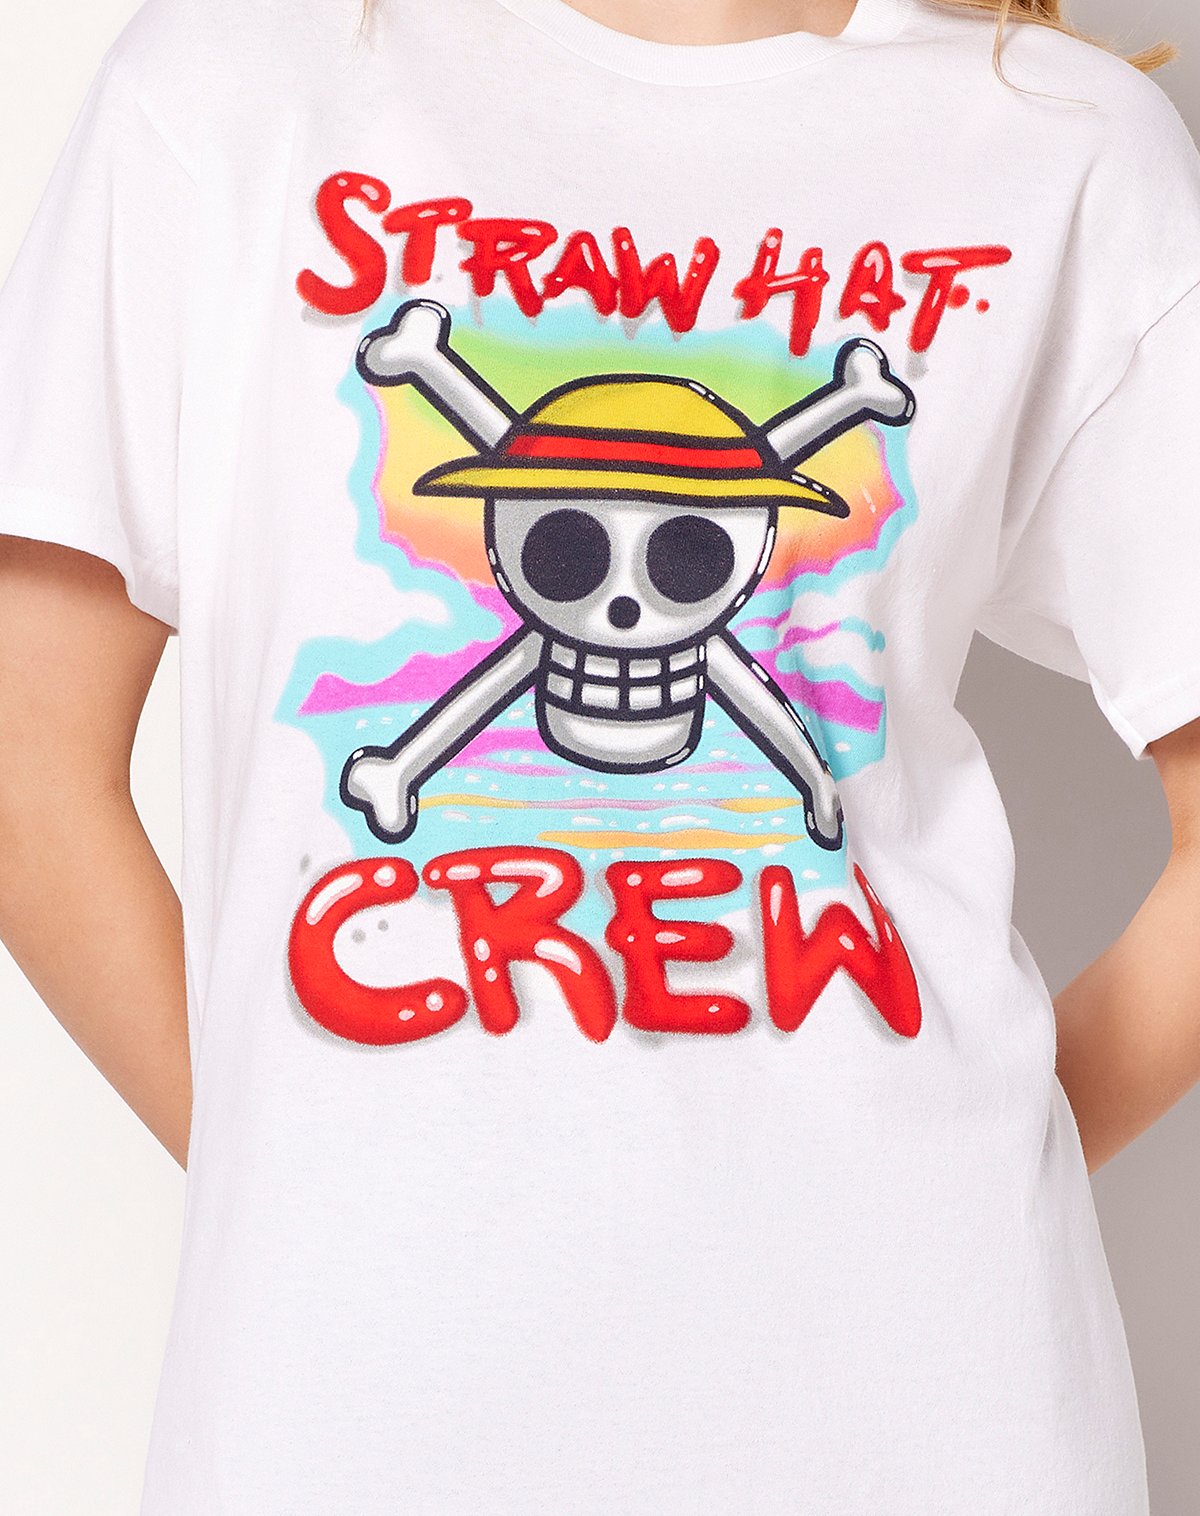 Airbrush Straw Hat Crew T Shirt